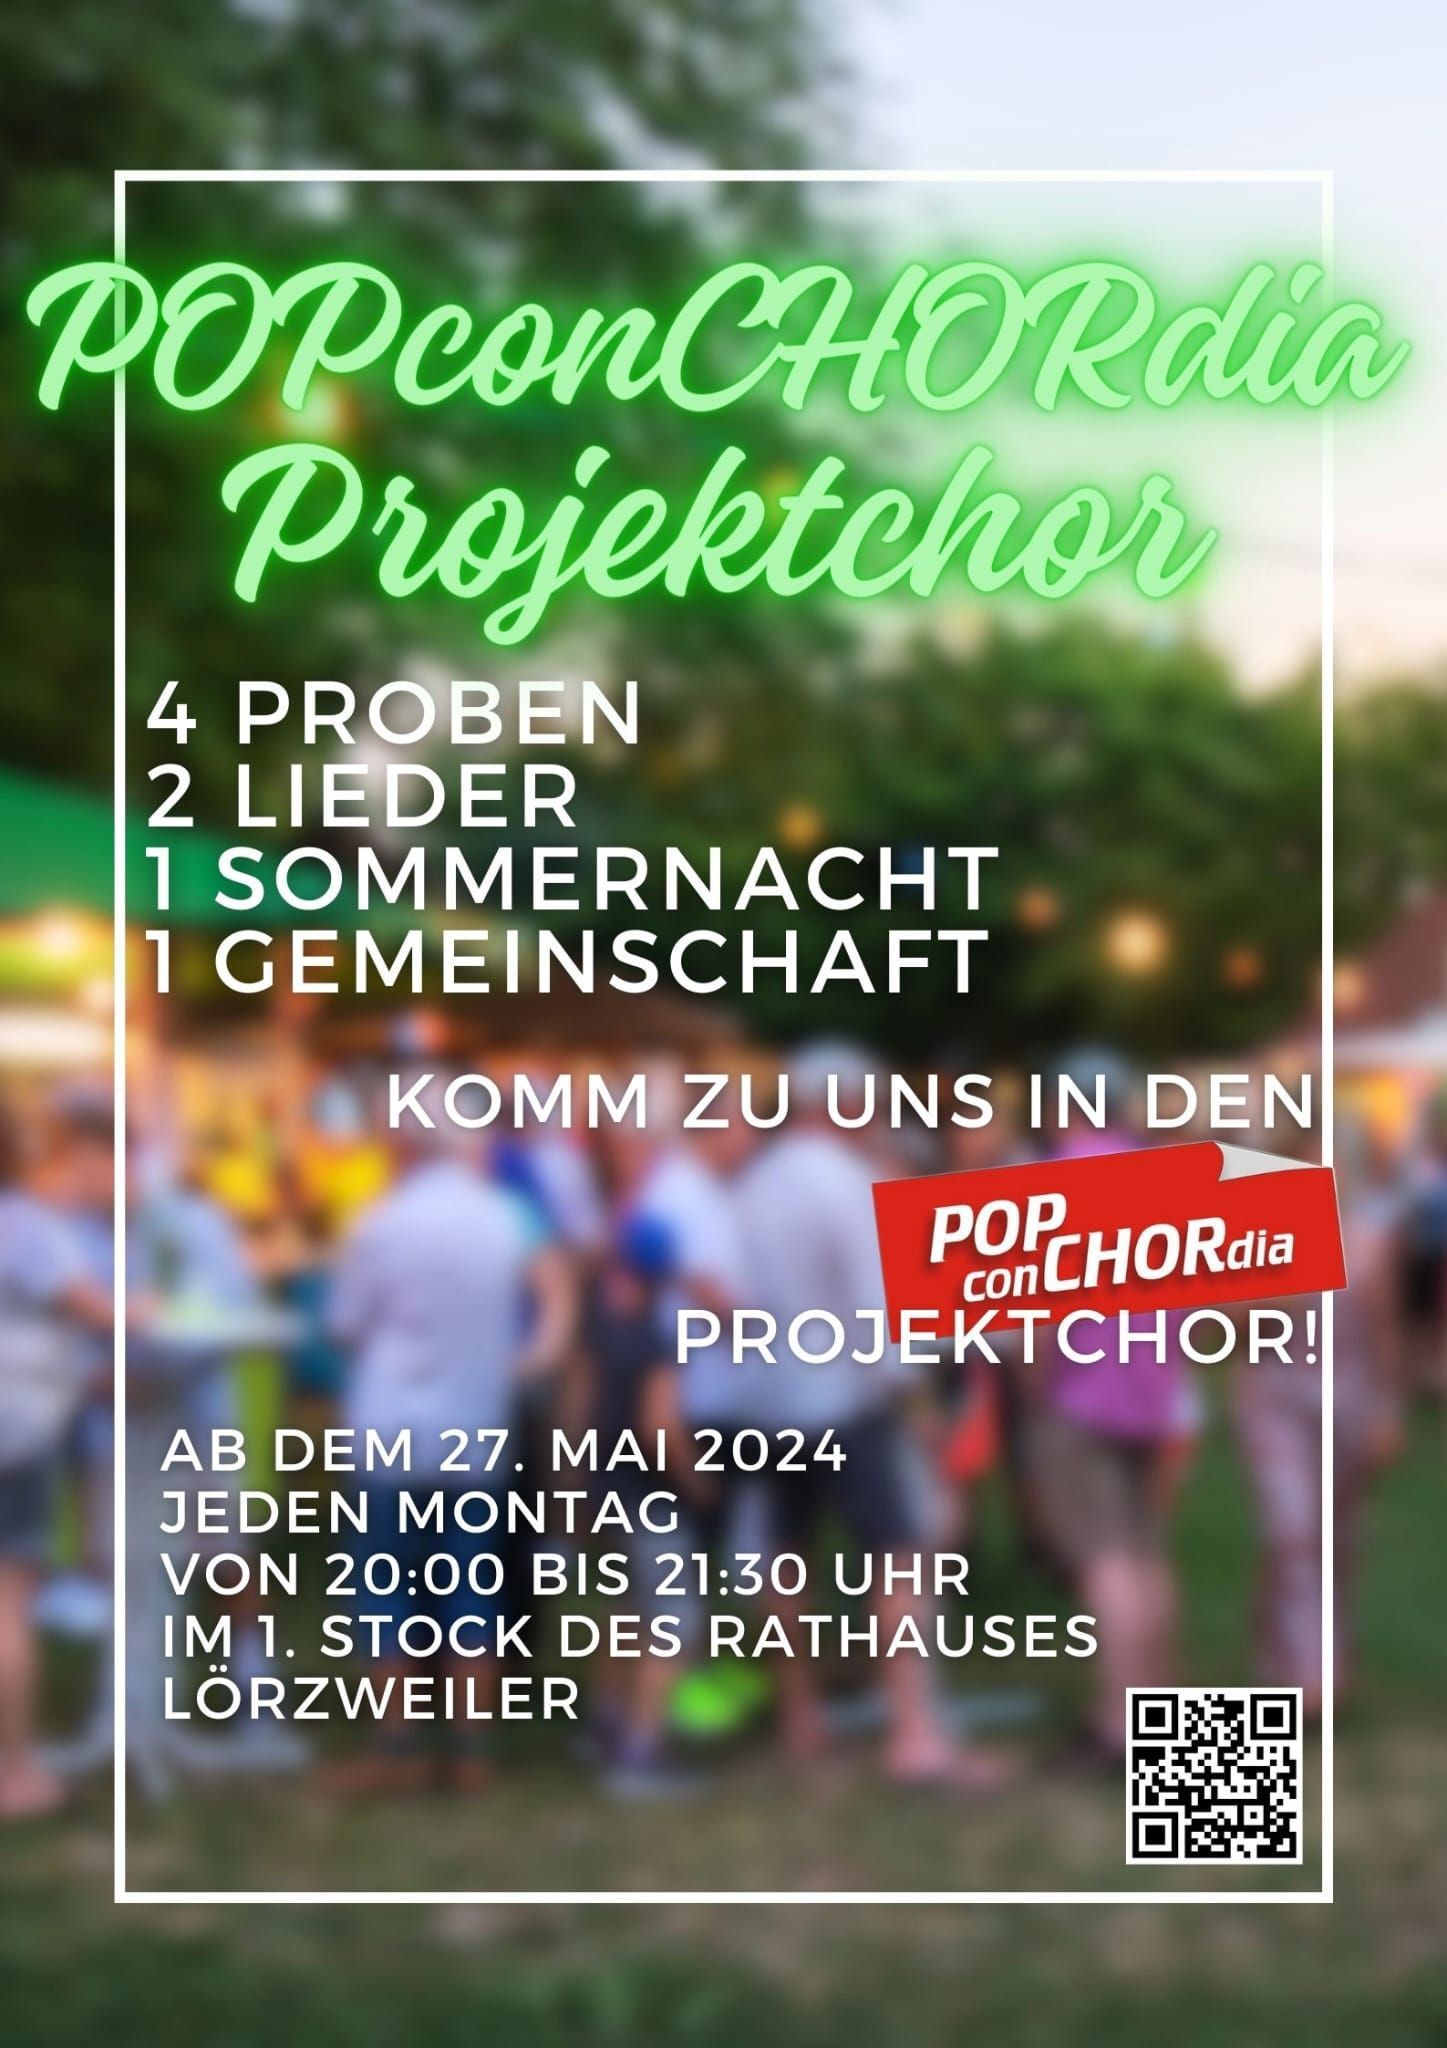 POPconCHORdia Lörzweiler Projektchor 2024